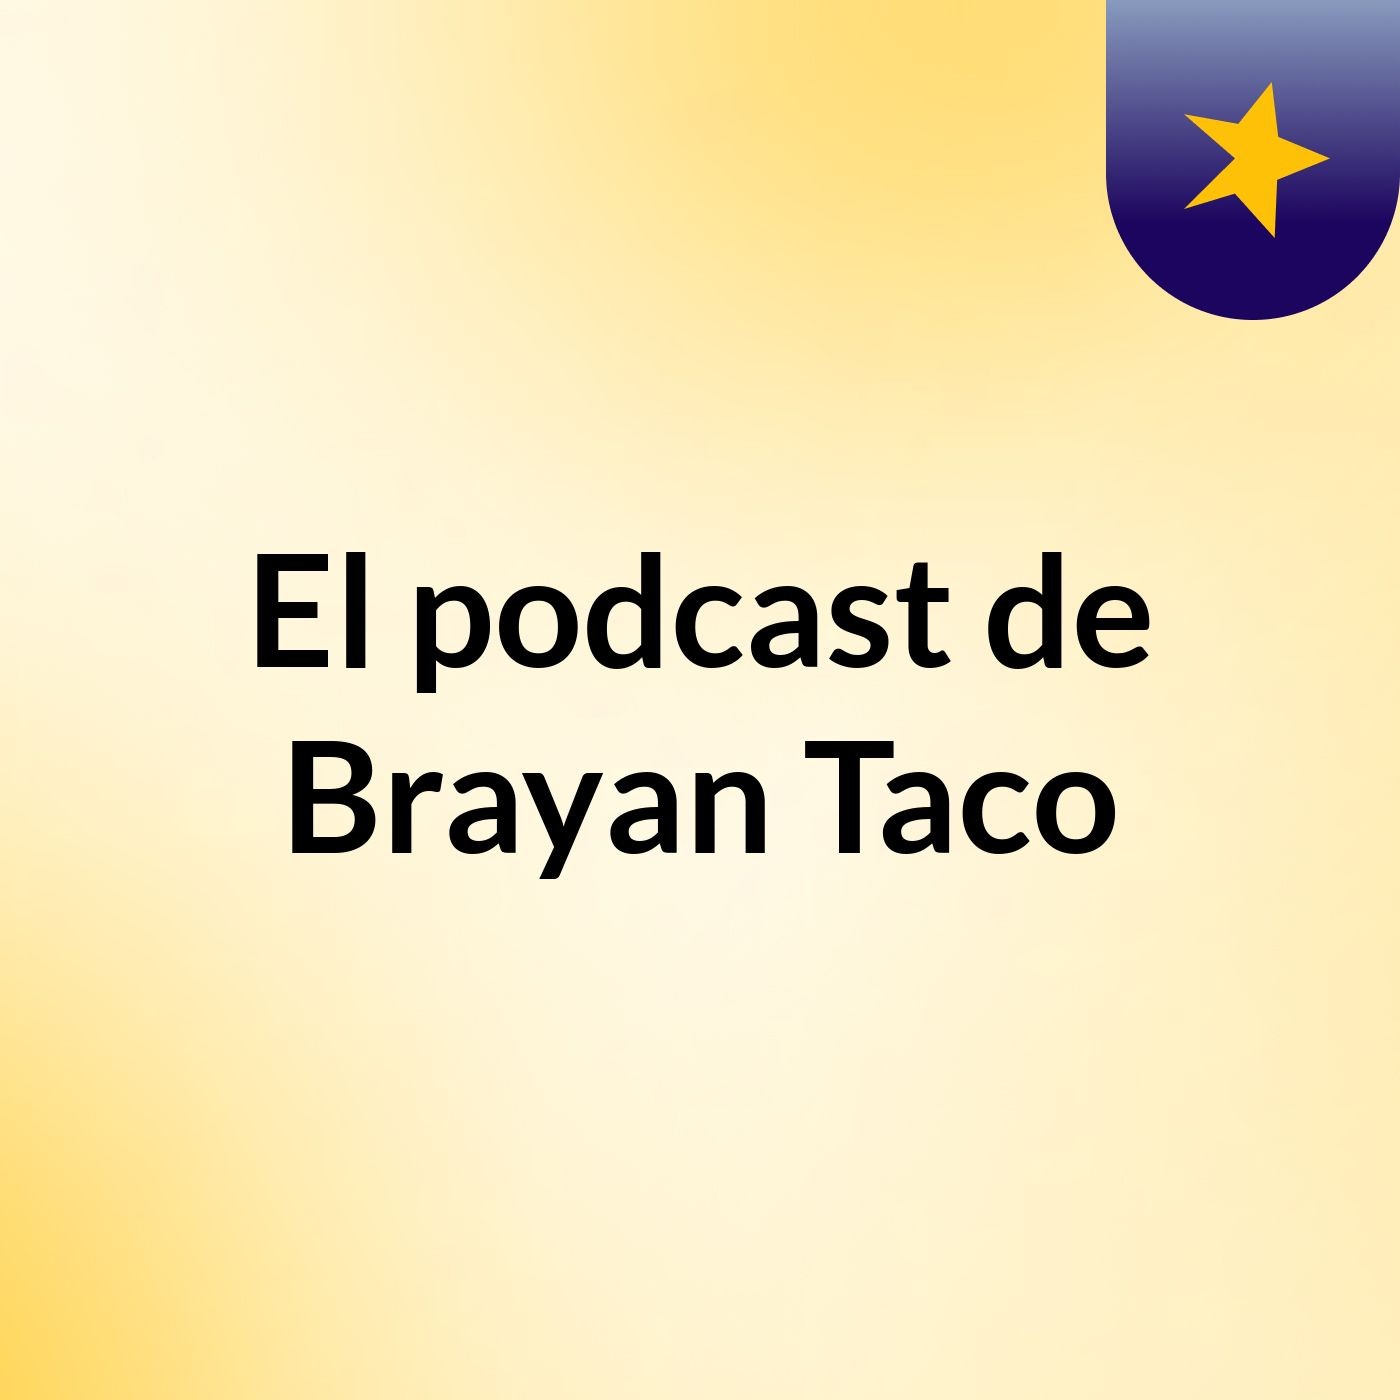 El podcast de Brayan Taco